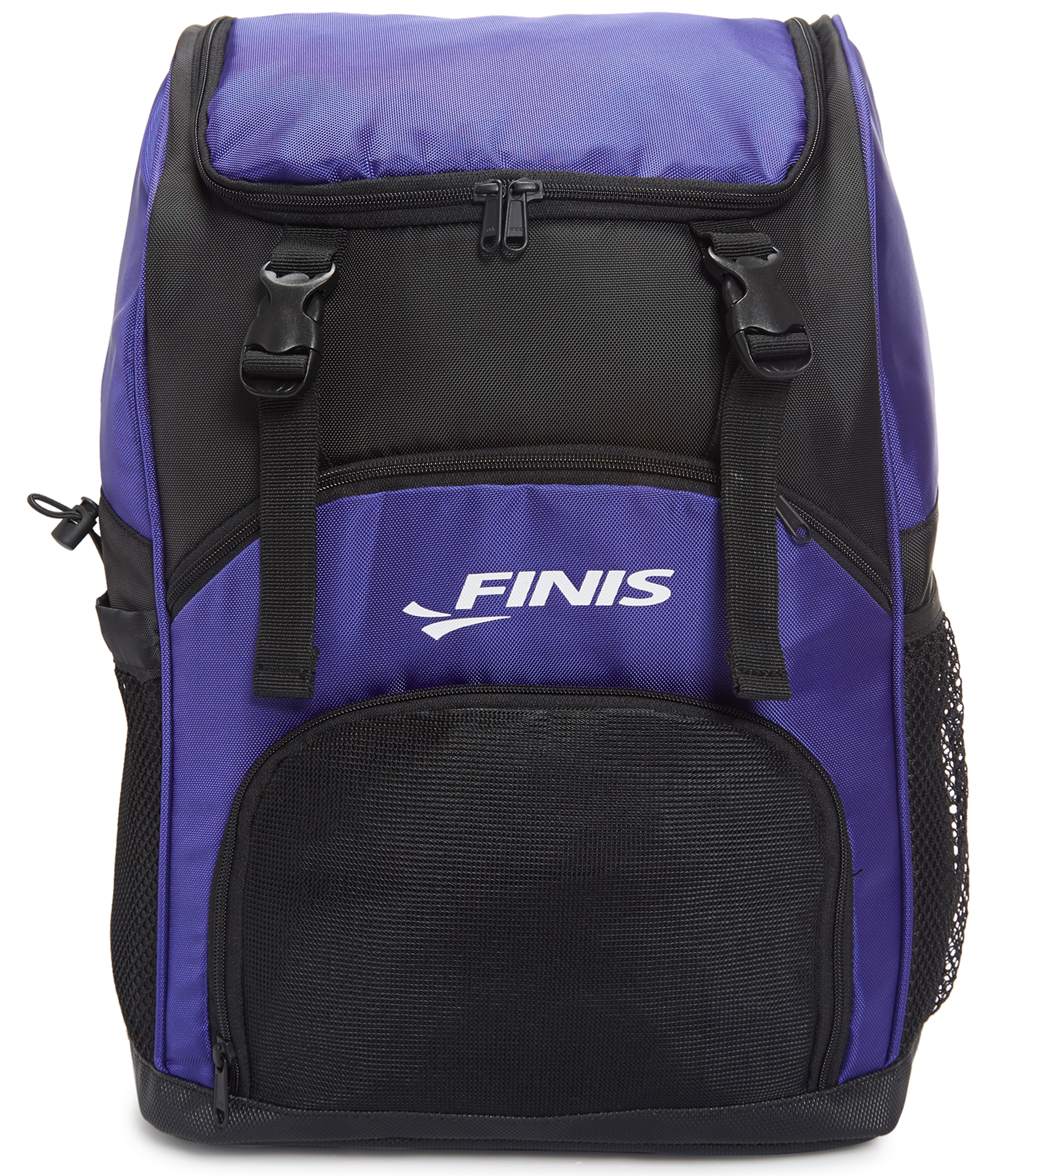 Finis Team Backpack - Ultraviolet - Swimoutlet.com